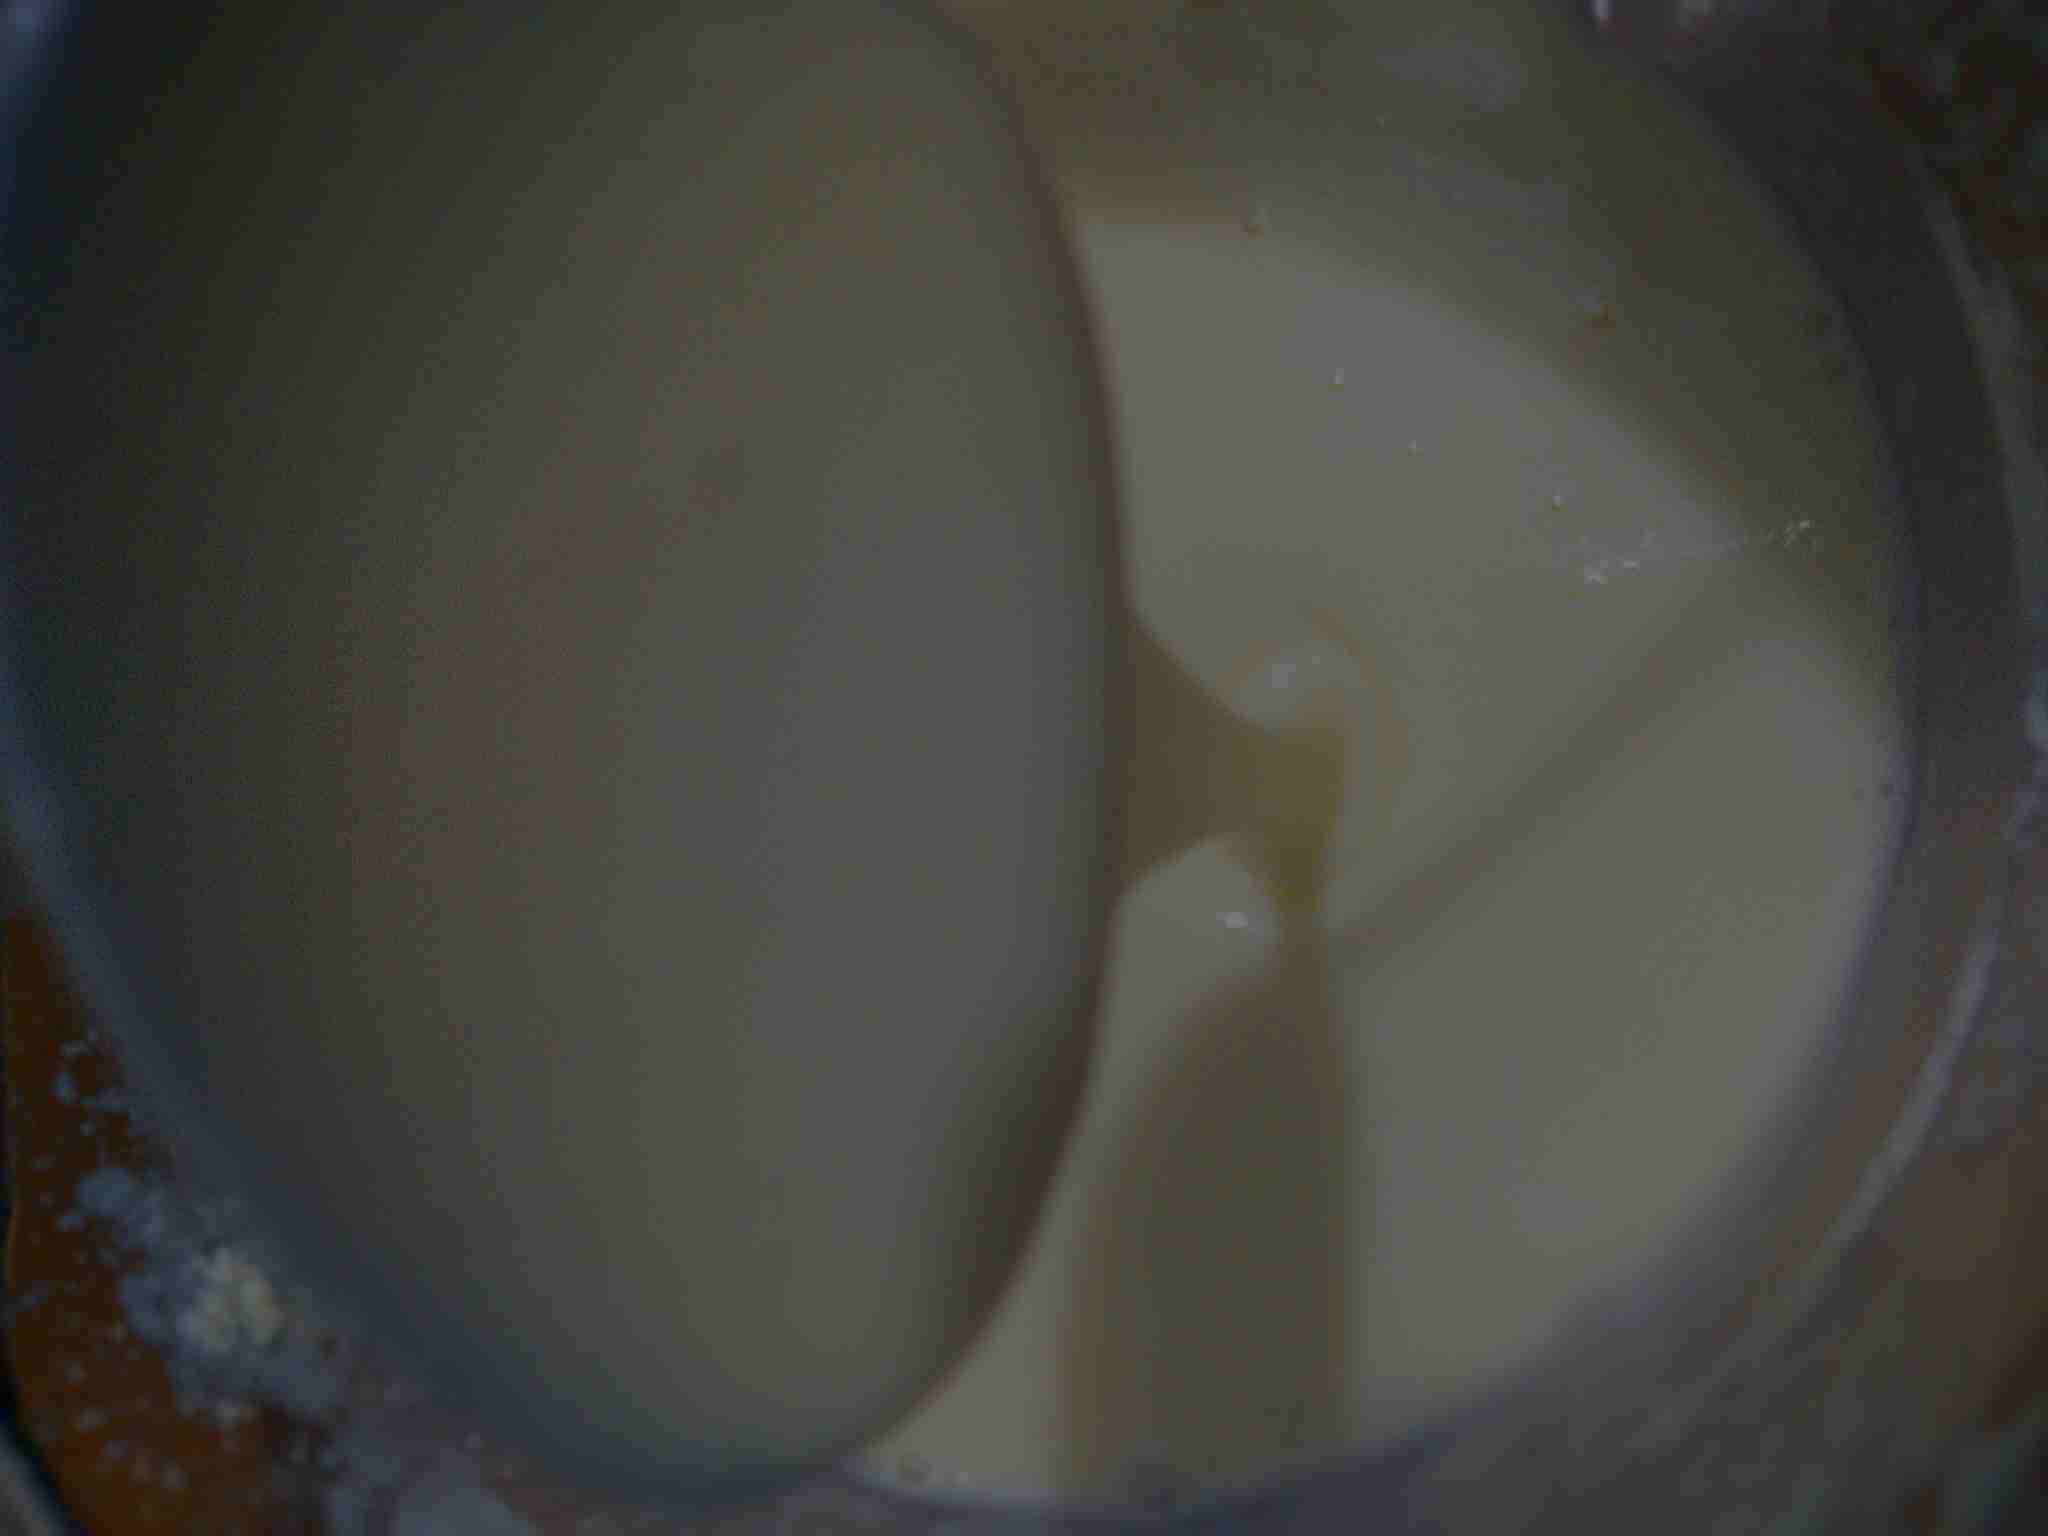 الحليب المكثف او المحلى بالبيت ملكة رمضان